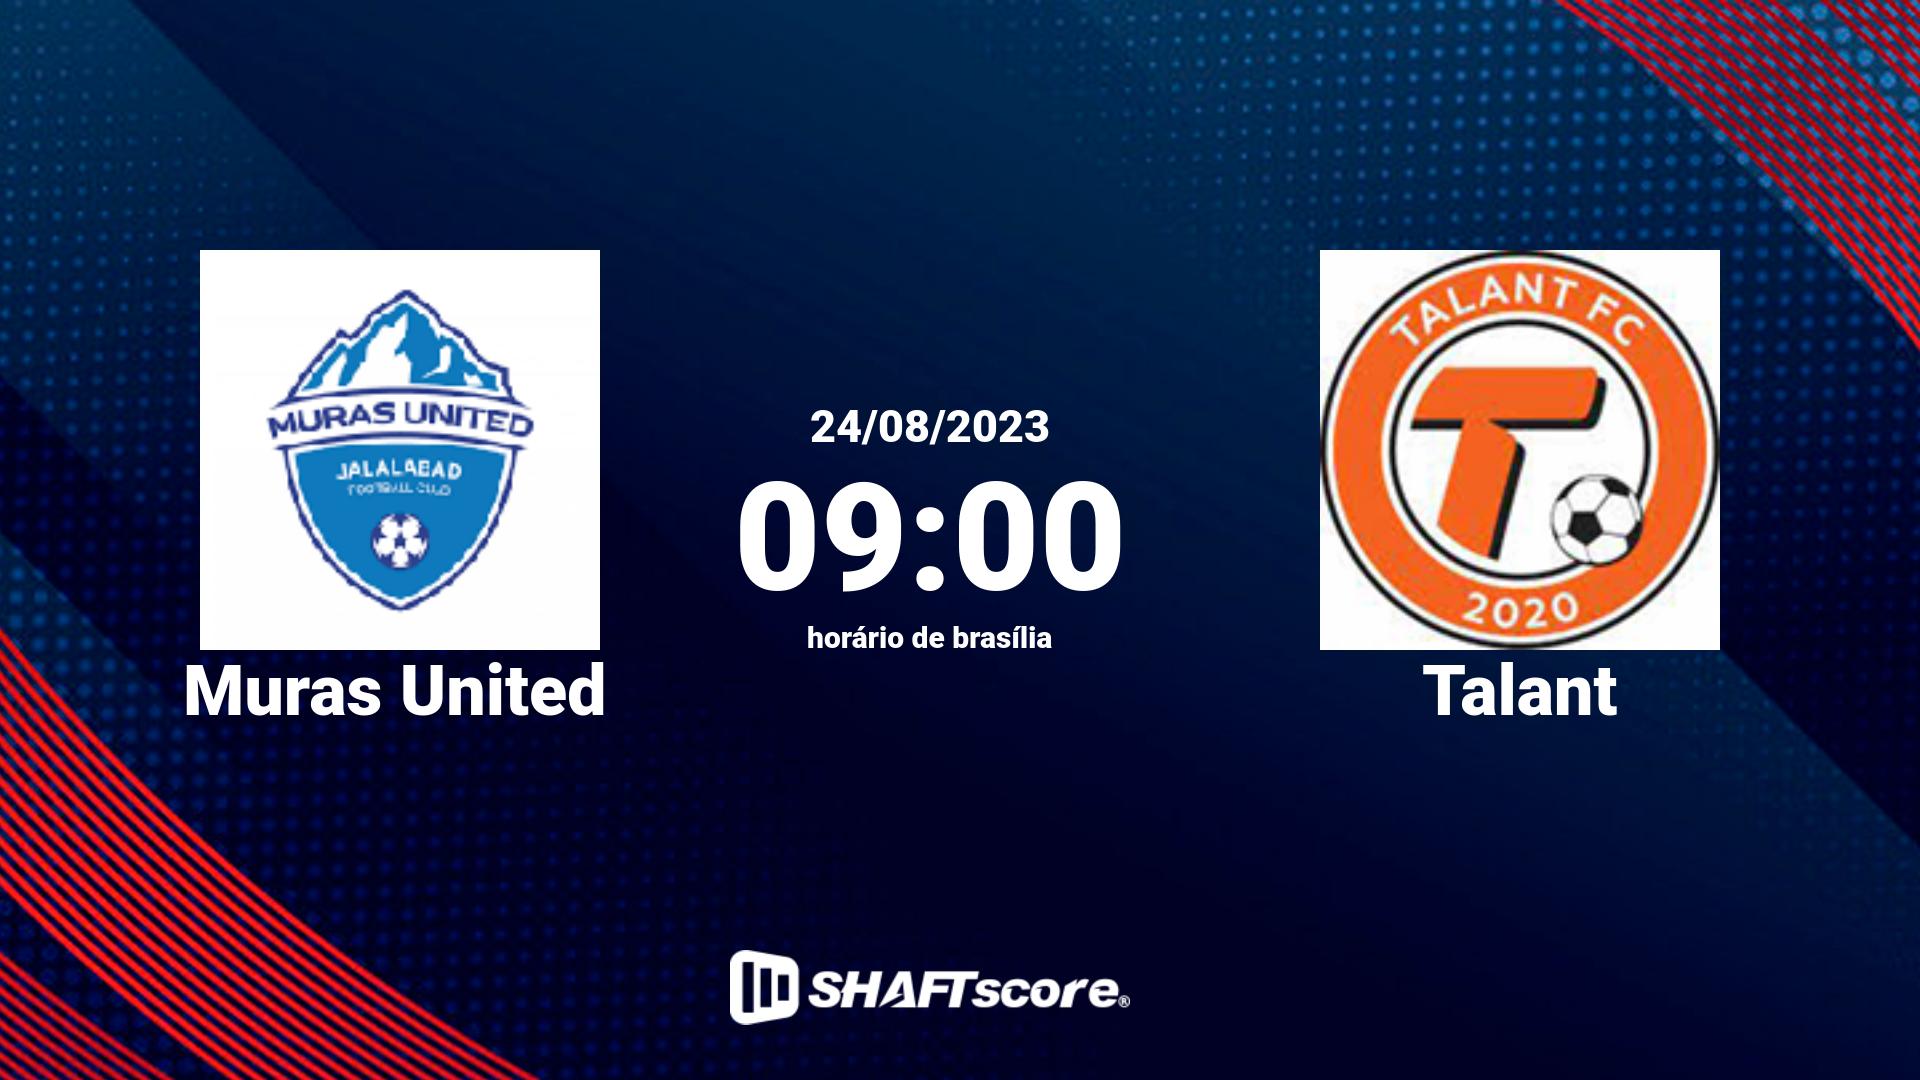 Estatísticas do jogo Muras United vs Talant 24.08 09:00